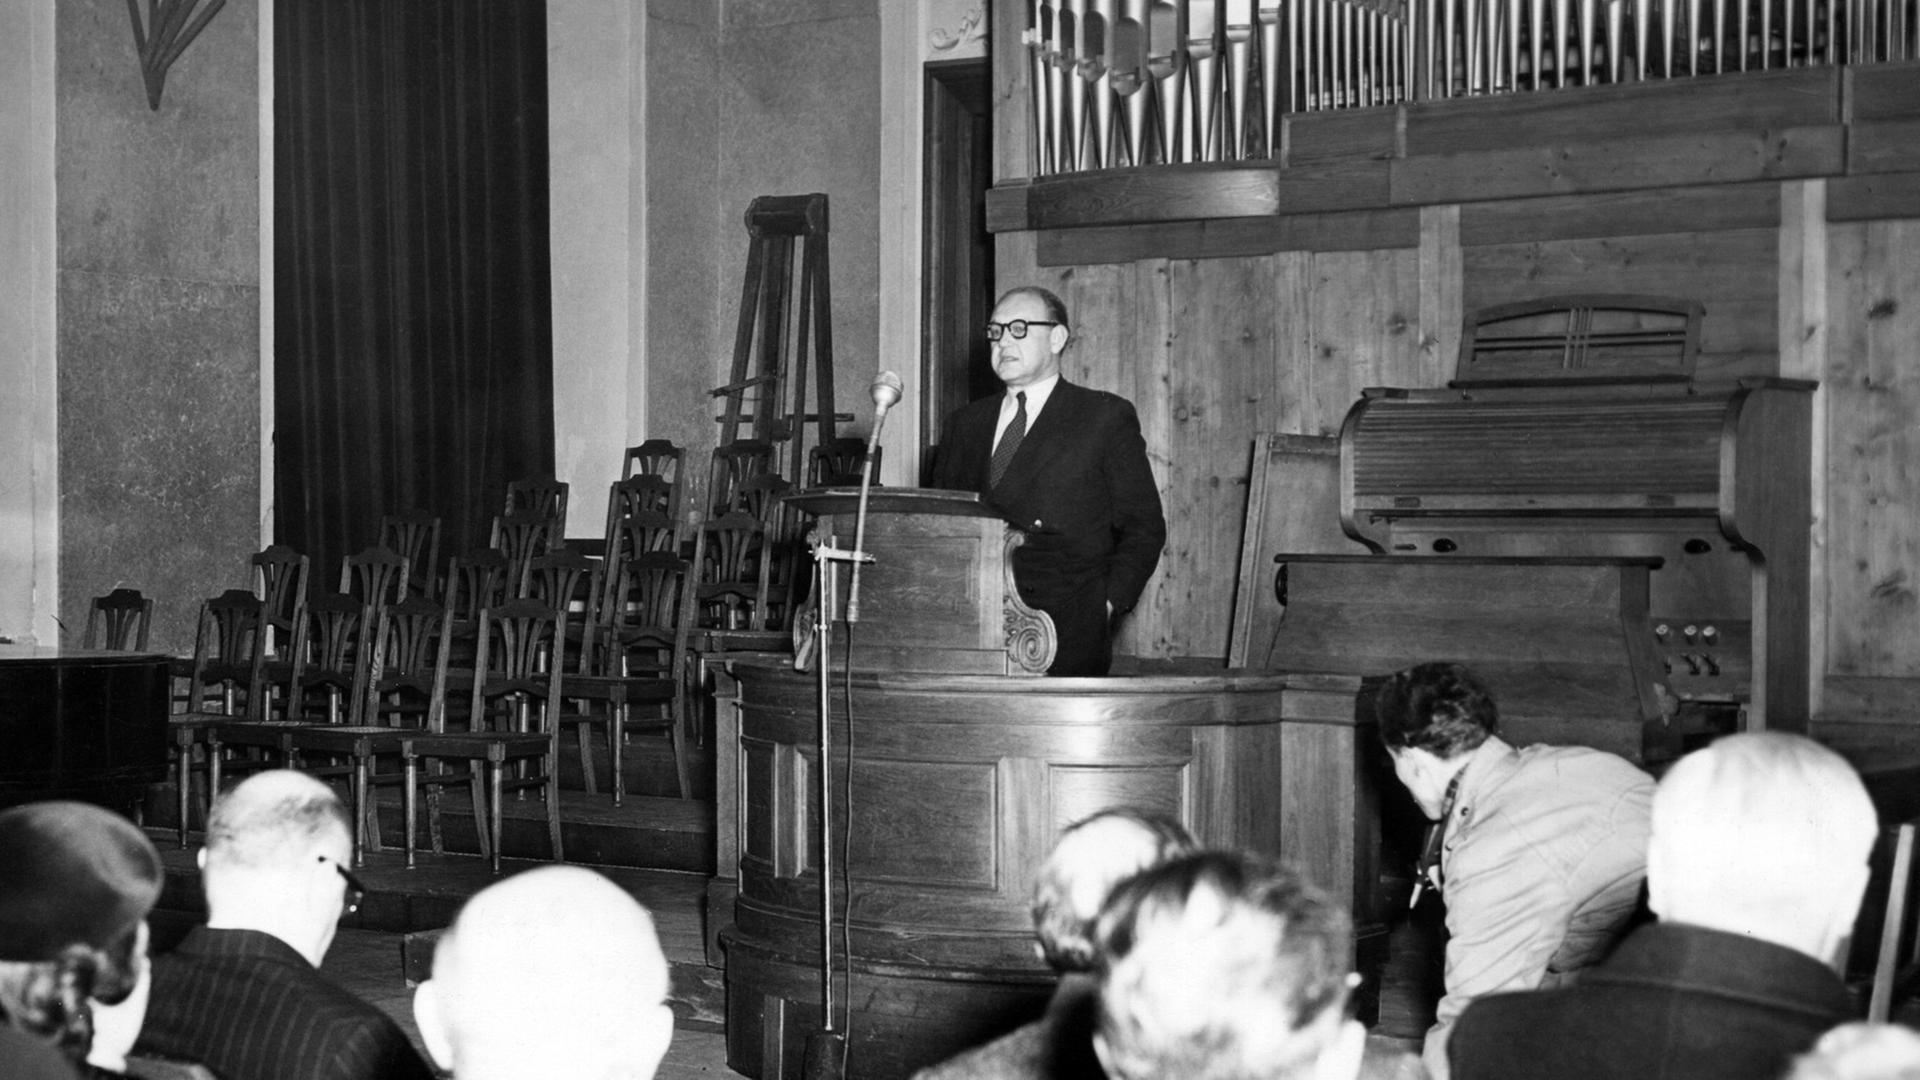 Der Publizist und Hamburger Senatsdirektor Erich Lüth (1902 - 1989) sprach am 11.02.1952 in der Aula der Frankfurter Universität über "Frieden mit Israel" und wandte sich erneut gegen den Regisseur V. Harlan.